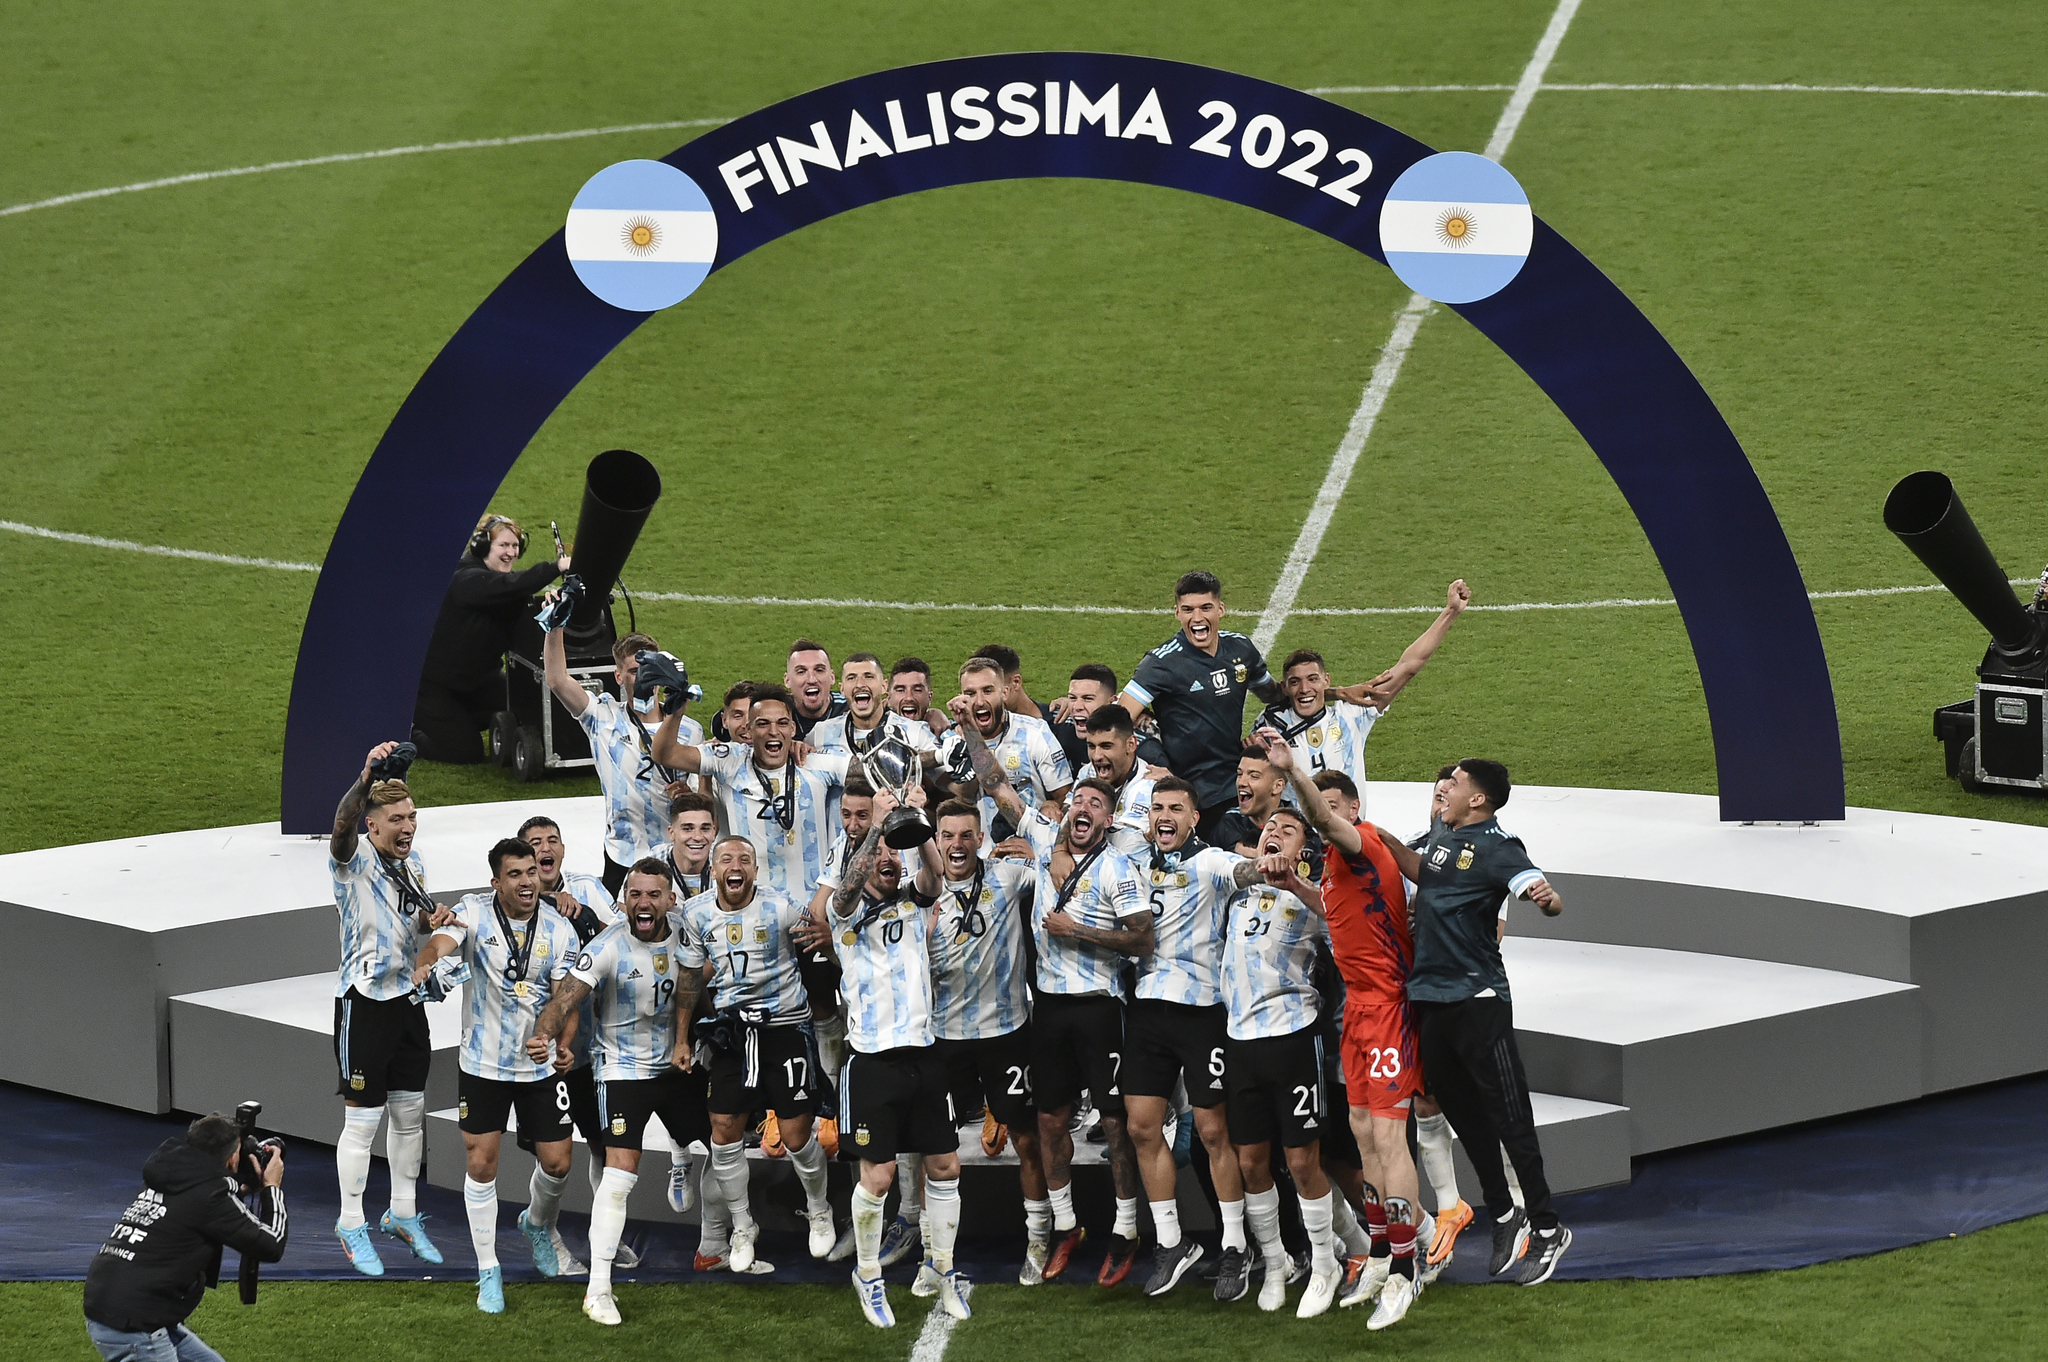 Finalissima 2022: Italia - Argentina: goles